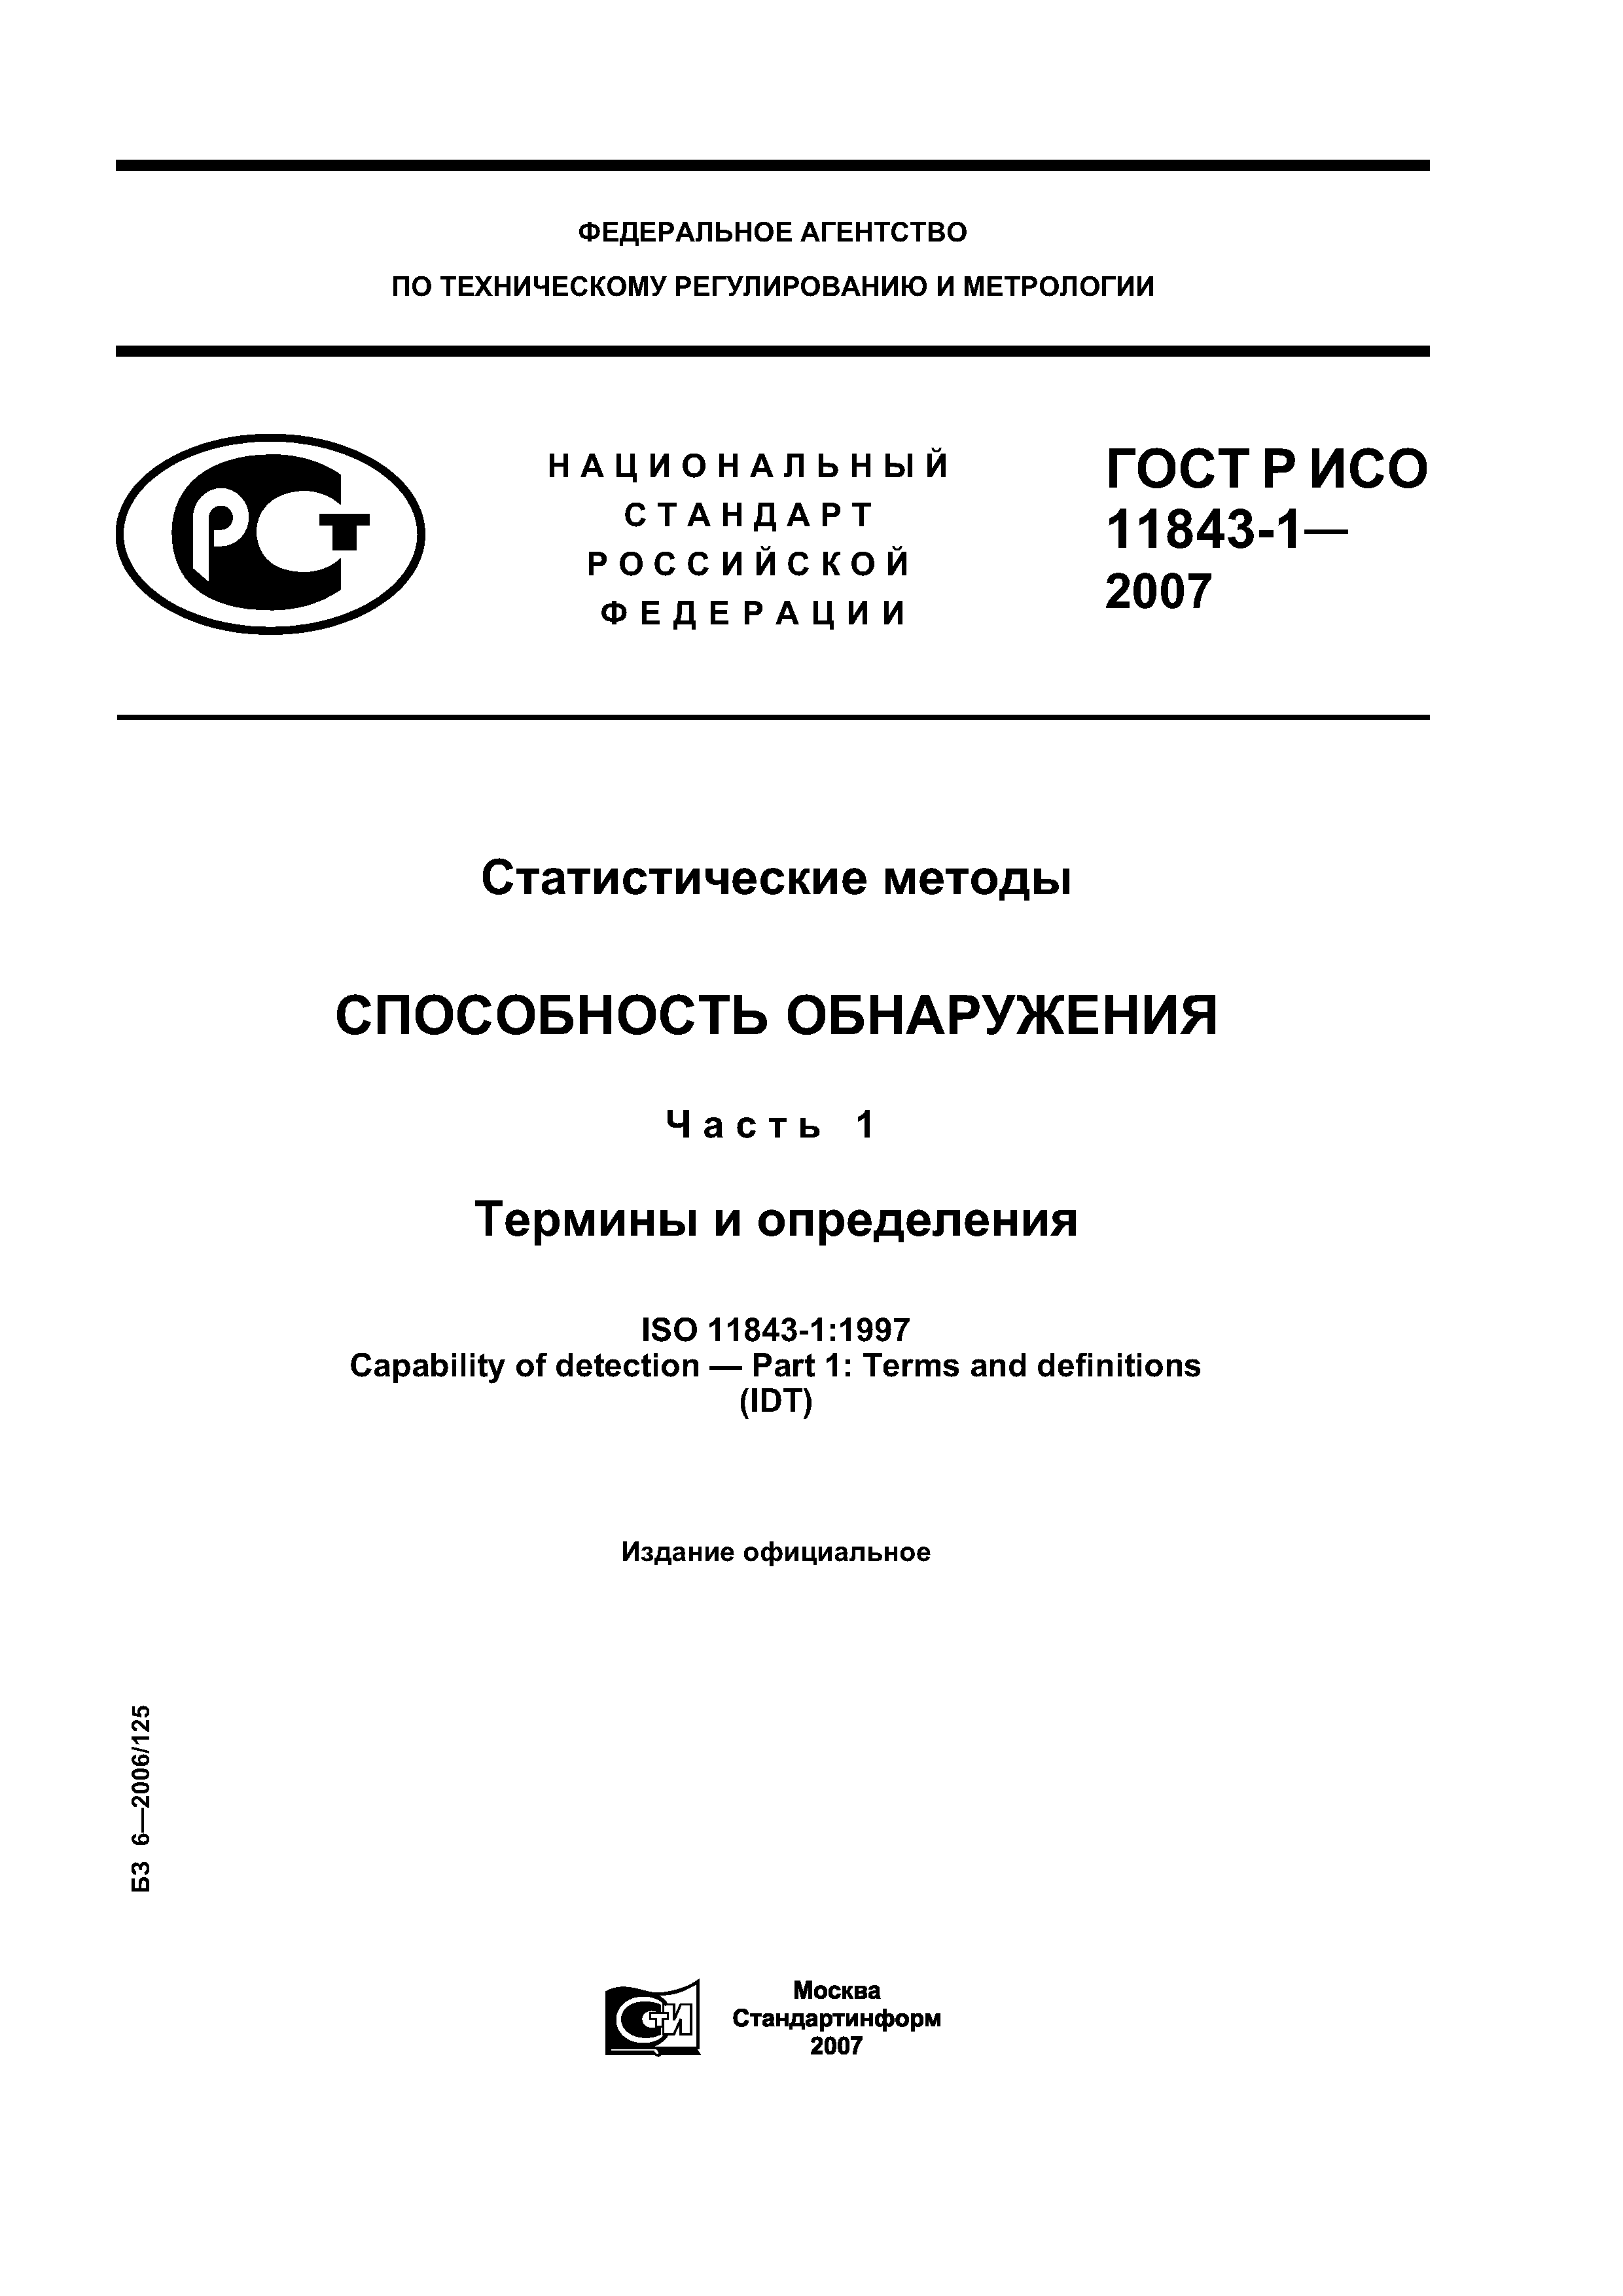 ГОСТ Р ИСО 11843-1-2007